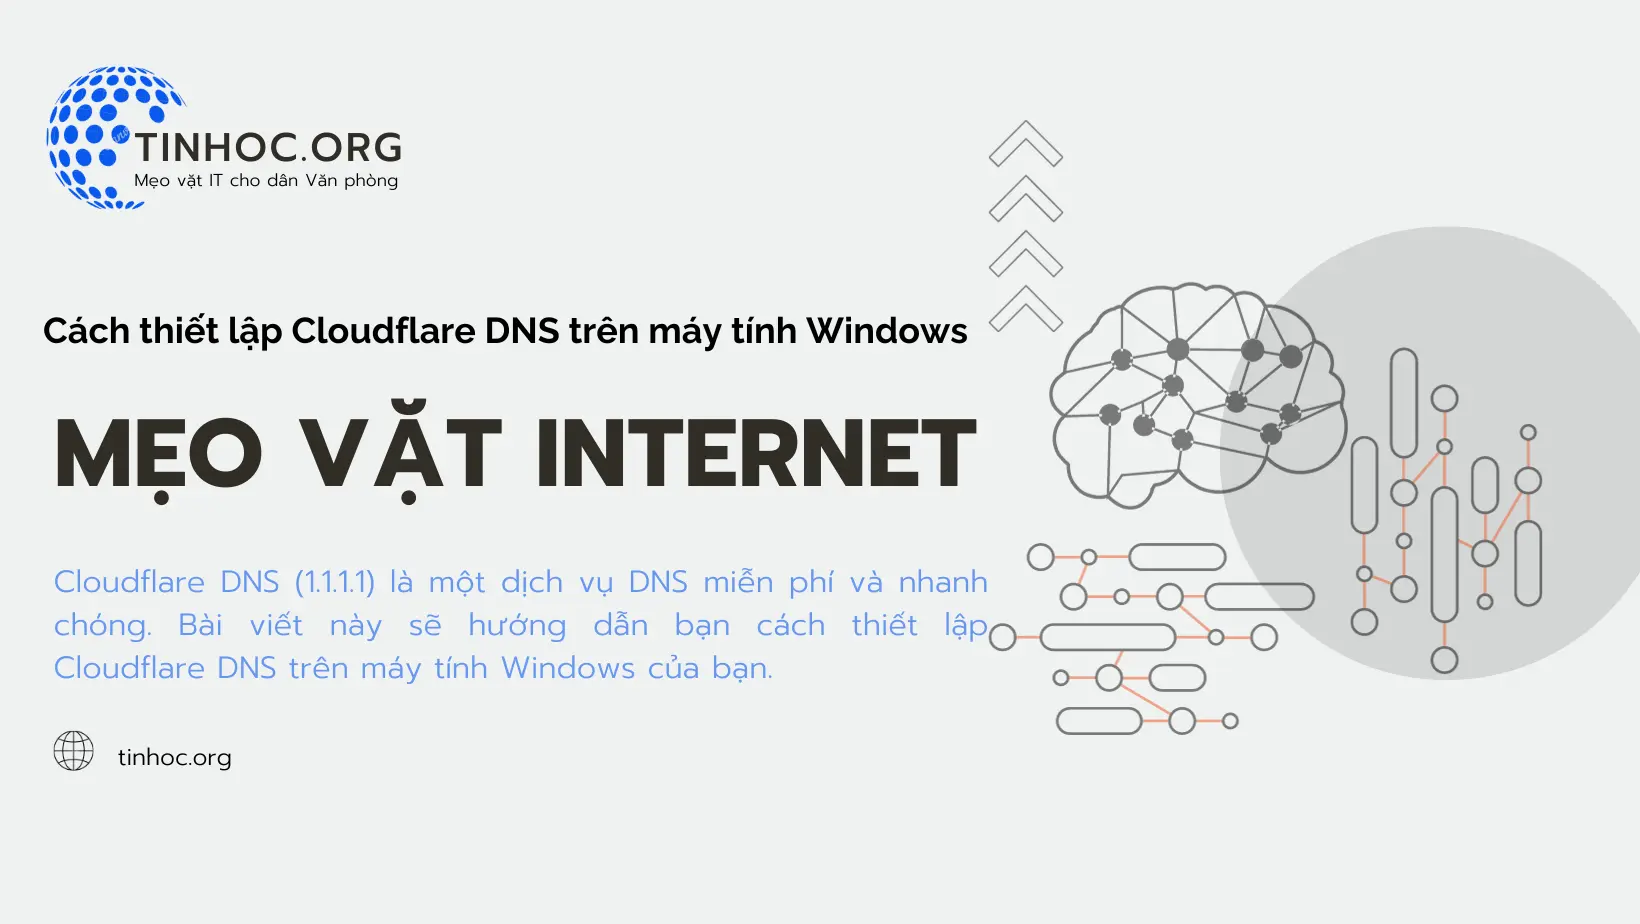 Cloudflare DNS (1.1.1.1) là một dịch vụ DNS miễn phí và nhanh chóng. Bài viết này sẽ hướng dẫn bạn cách thiết lập Cloudflare DNS trên máy tính Windows của bạn.